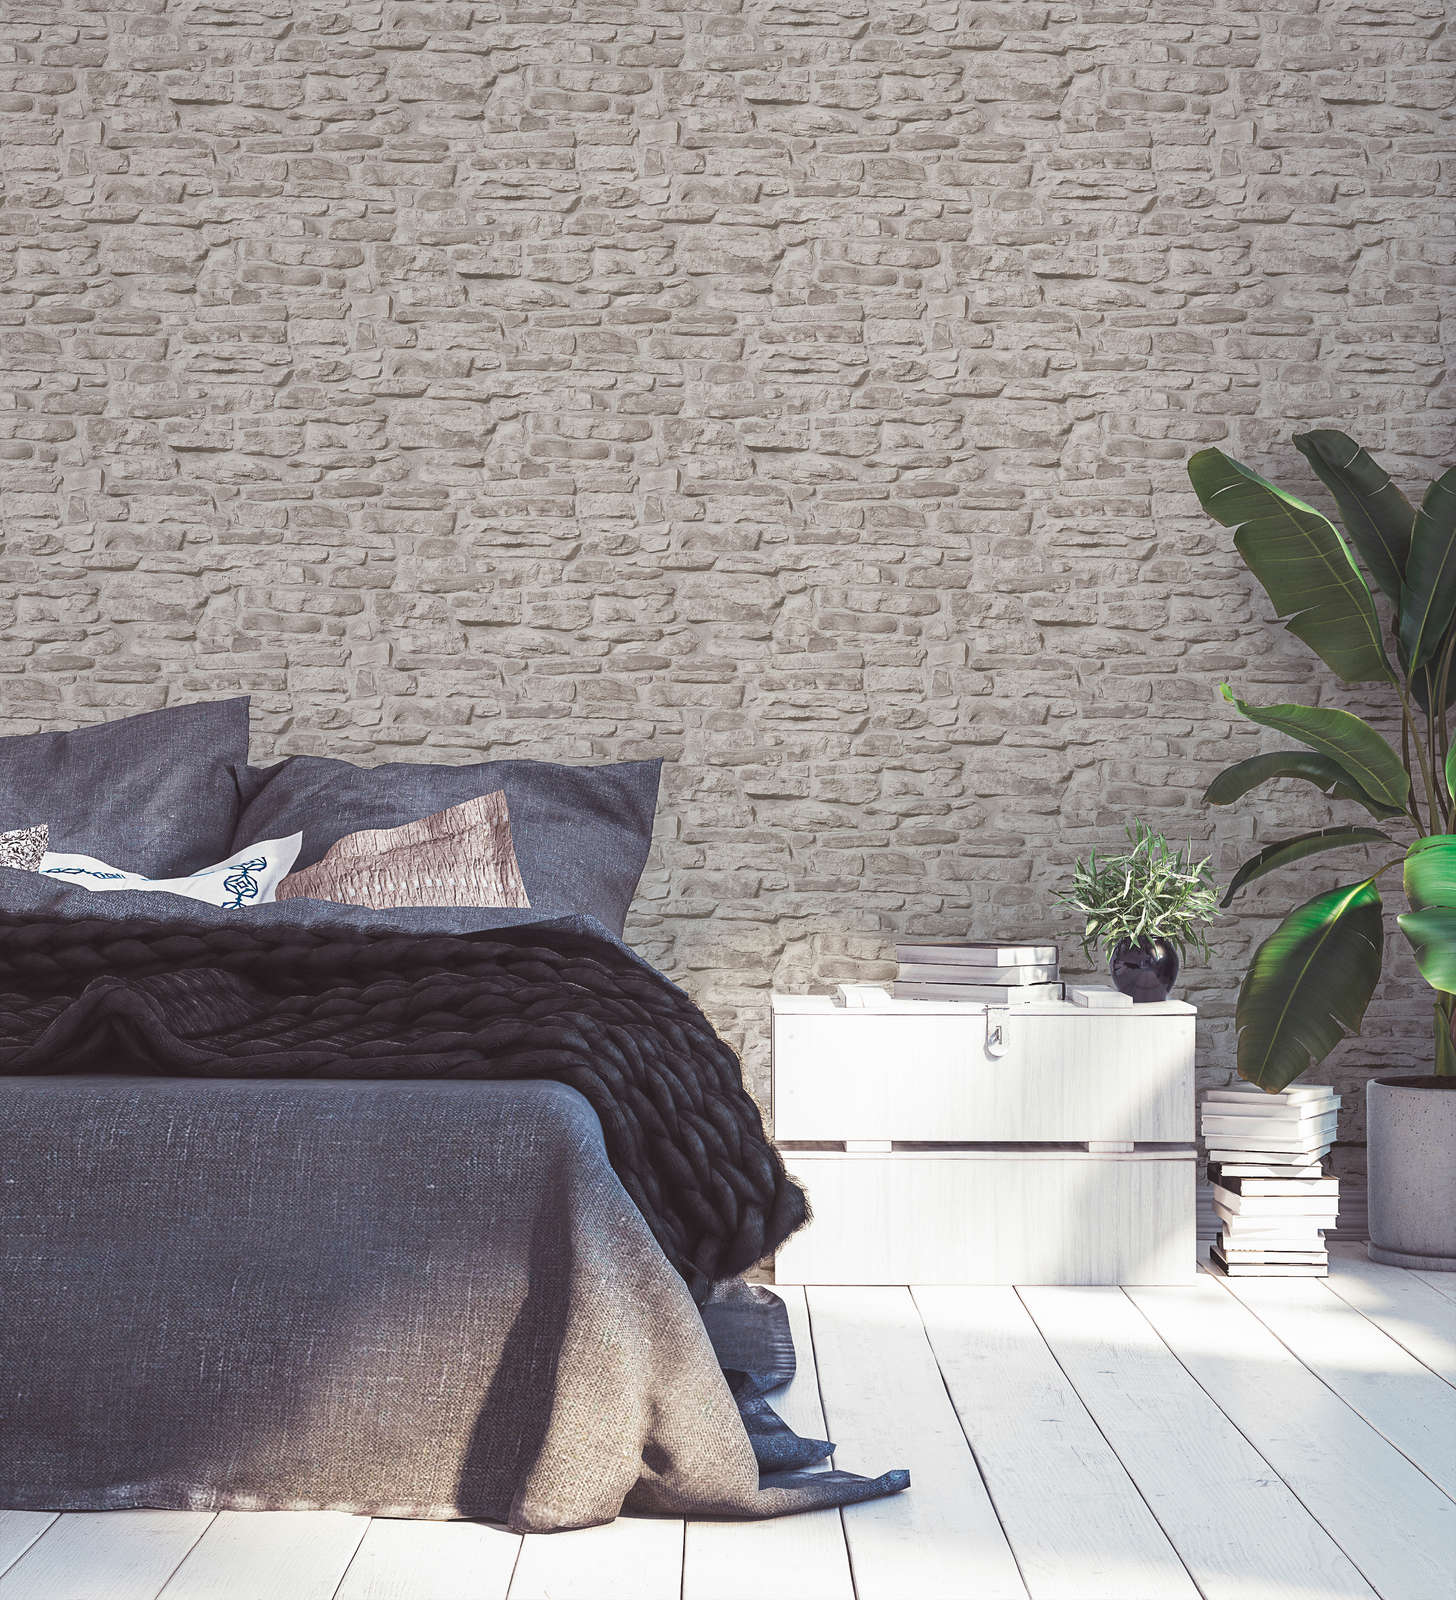             Vliestapete rustikale Steinoptik Ziegelmauer – Greige, Grau, Weiß
        